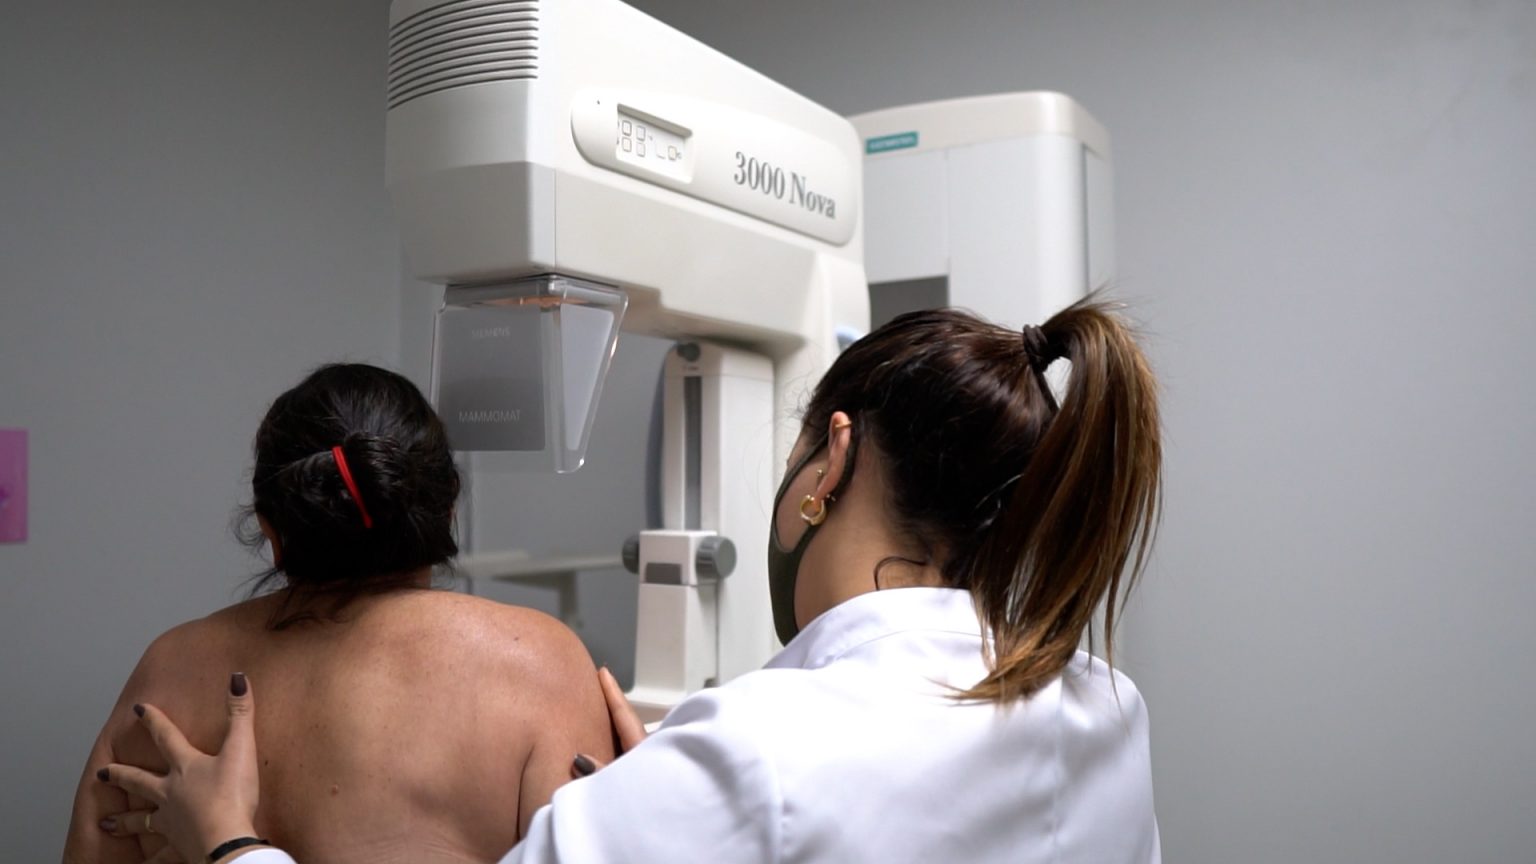 Outubro Rosa em Ação: Vitória Amplia em 75% a Disponibilidade de Mamografias para Conscientização sobre o Câncer de Mama.